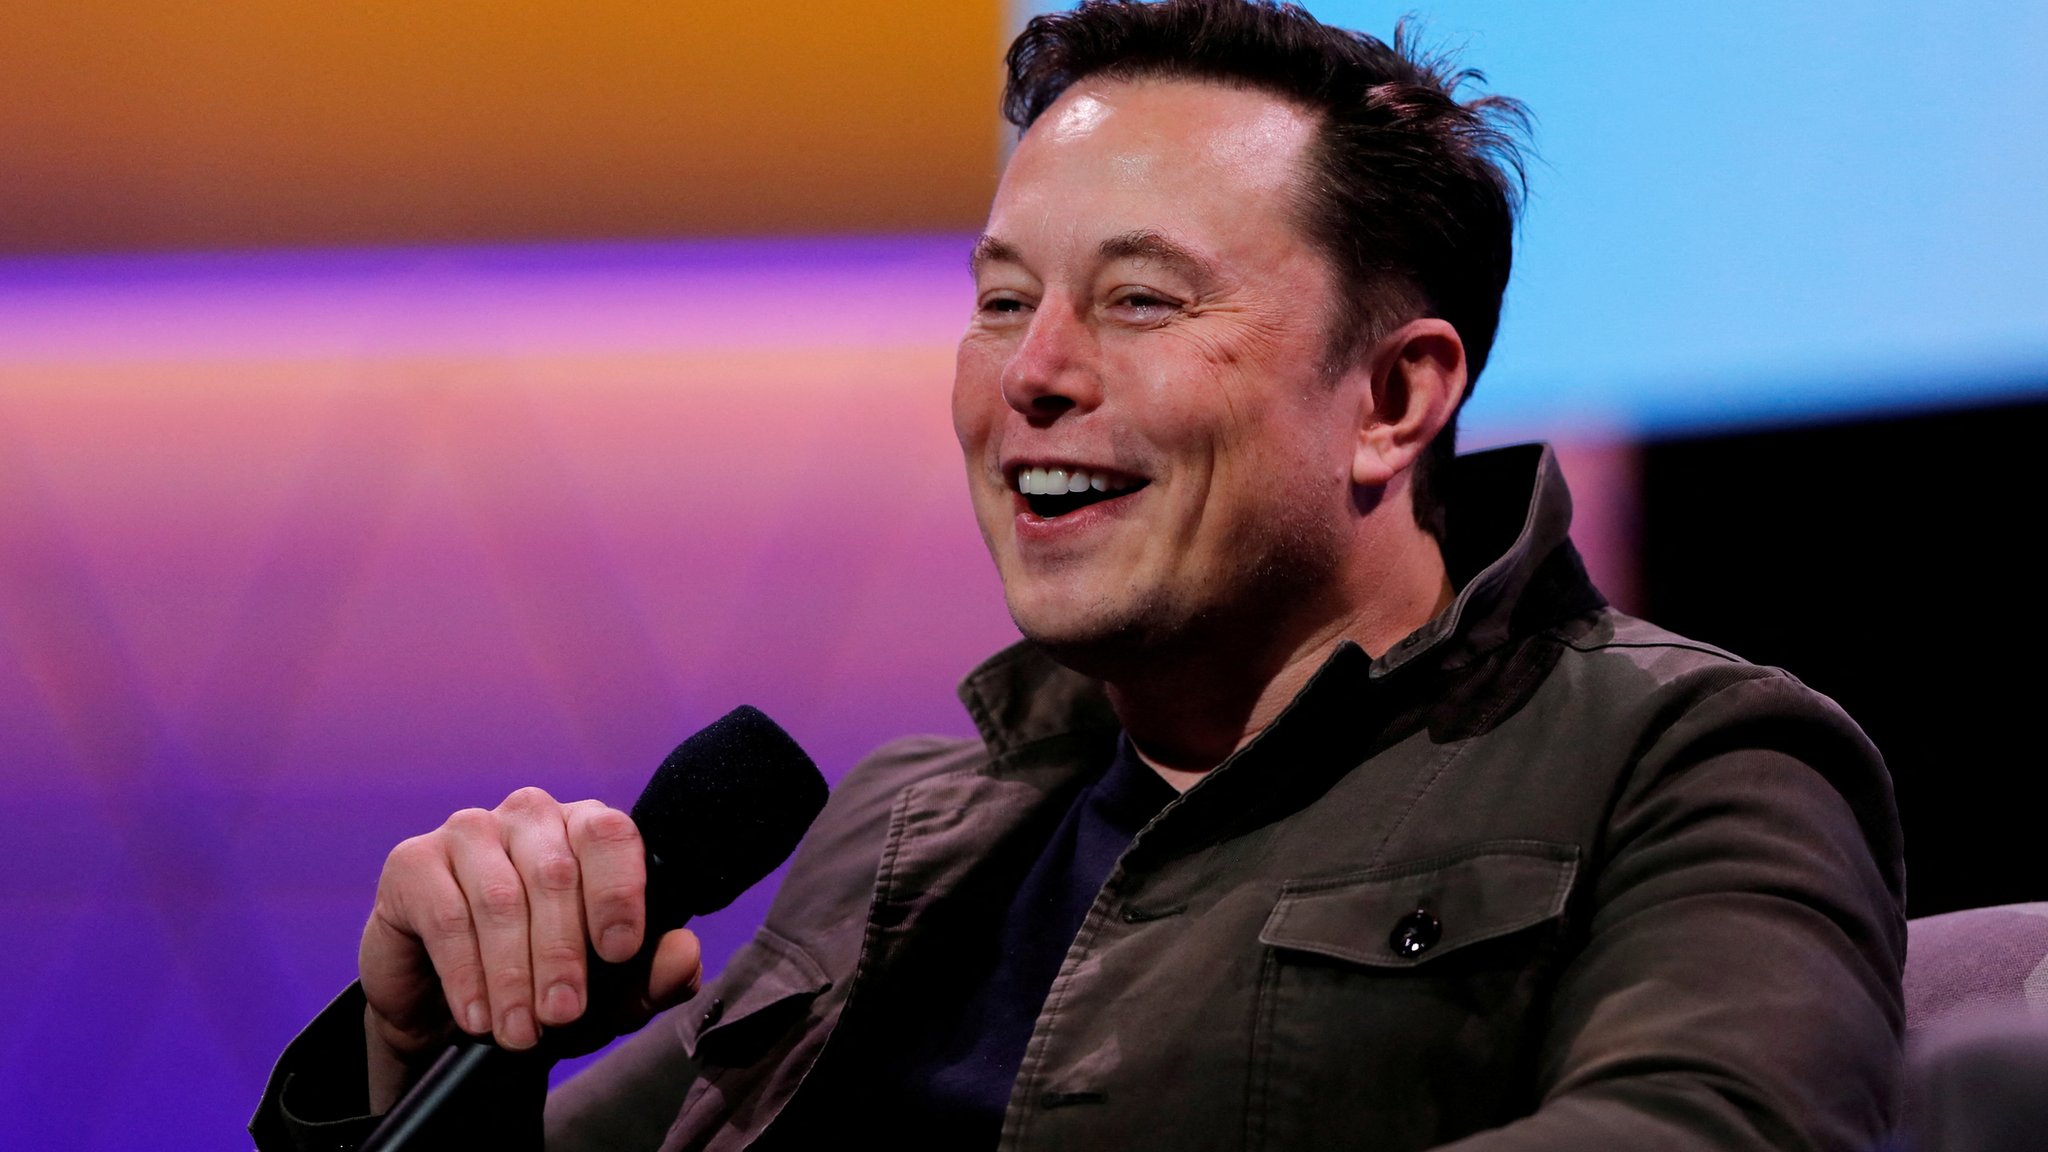 Колко загуби Tesla от инвестицията си в Биткойн през 2021 г.?